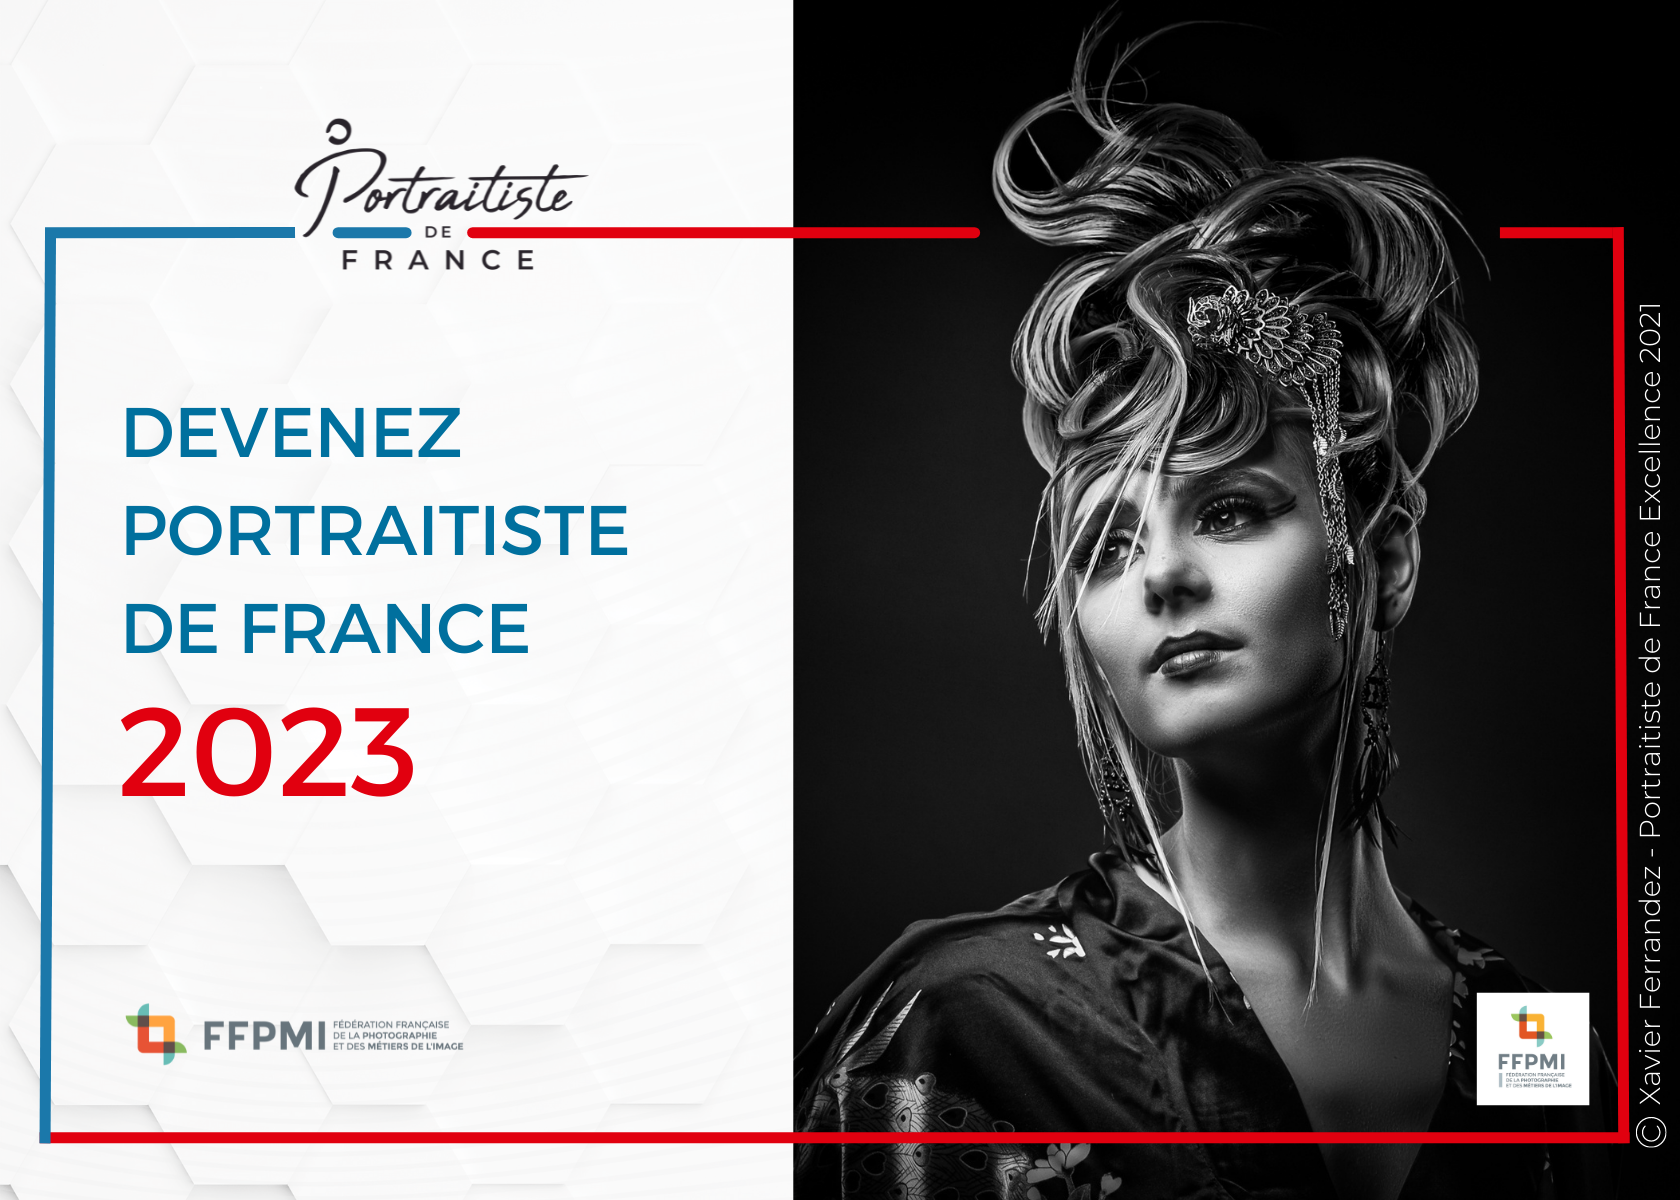 PORTRAITISTE DE FRANCE 2023